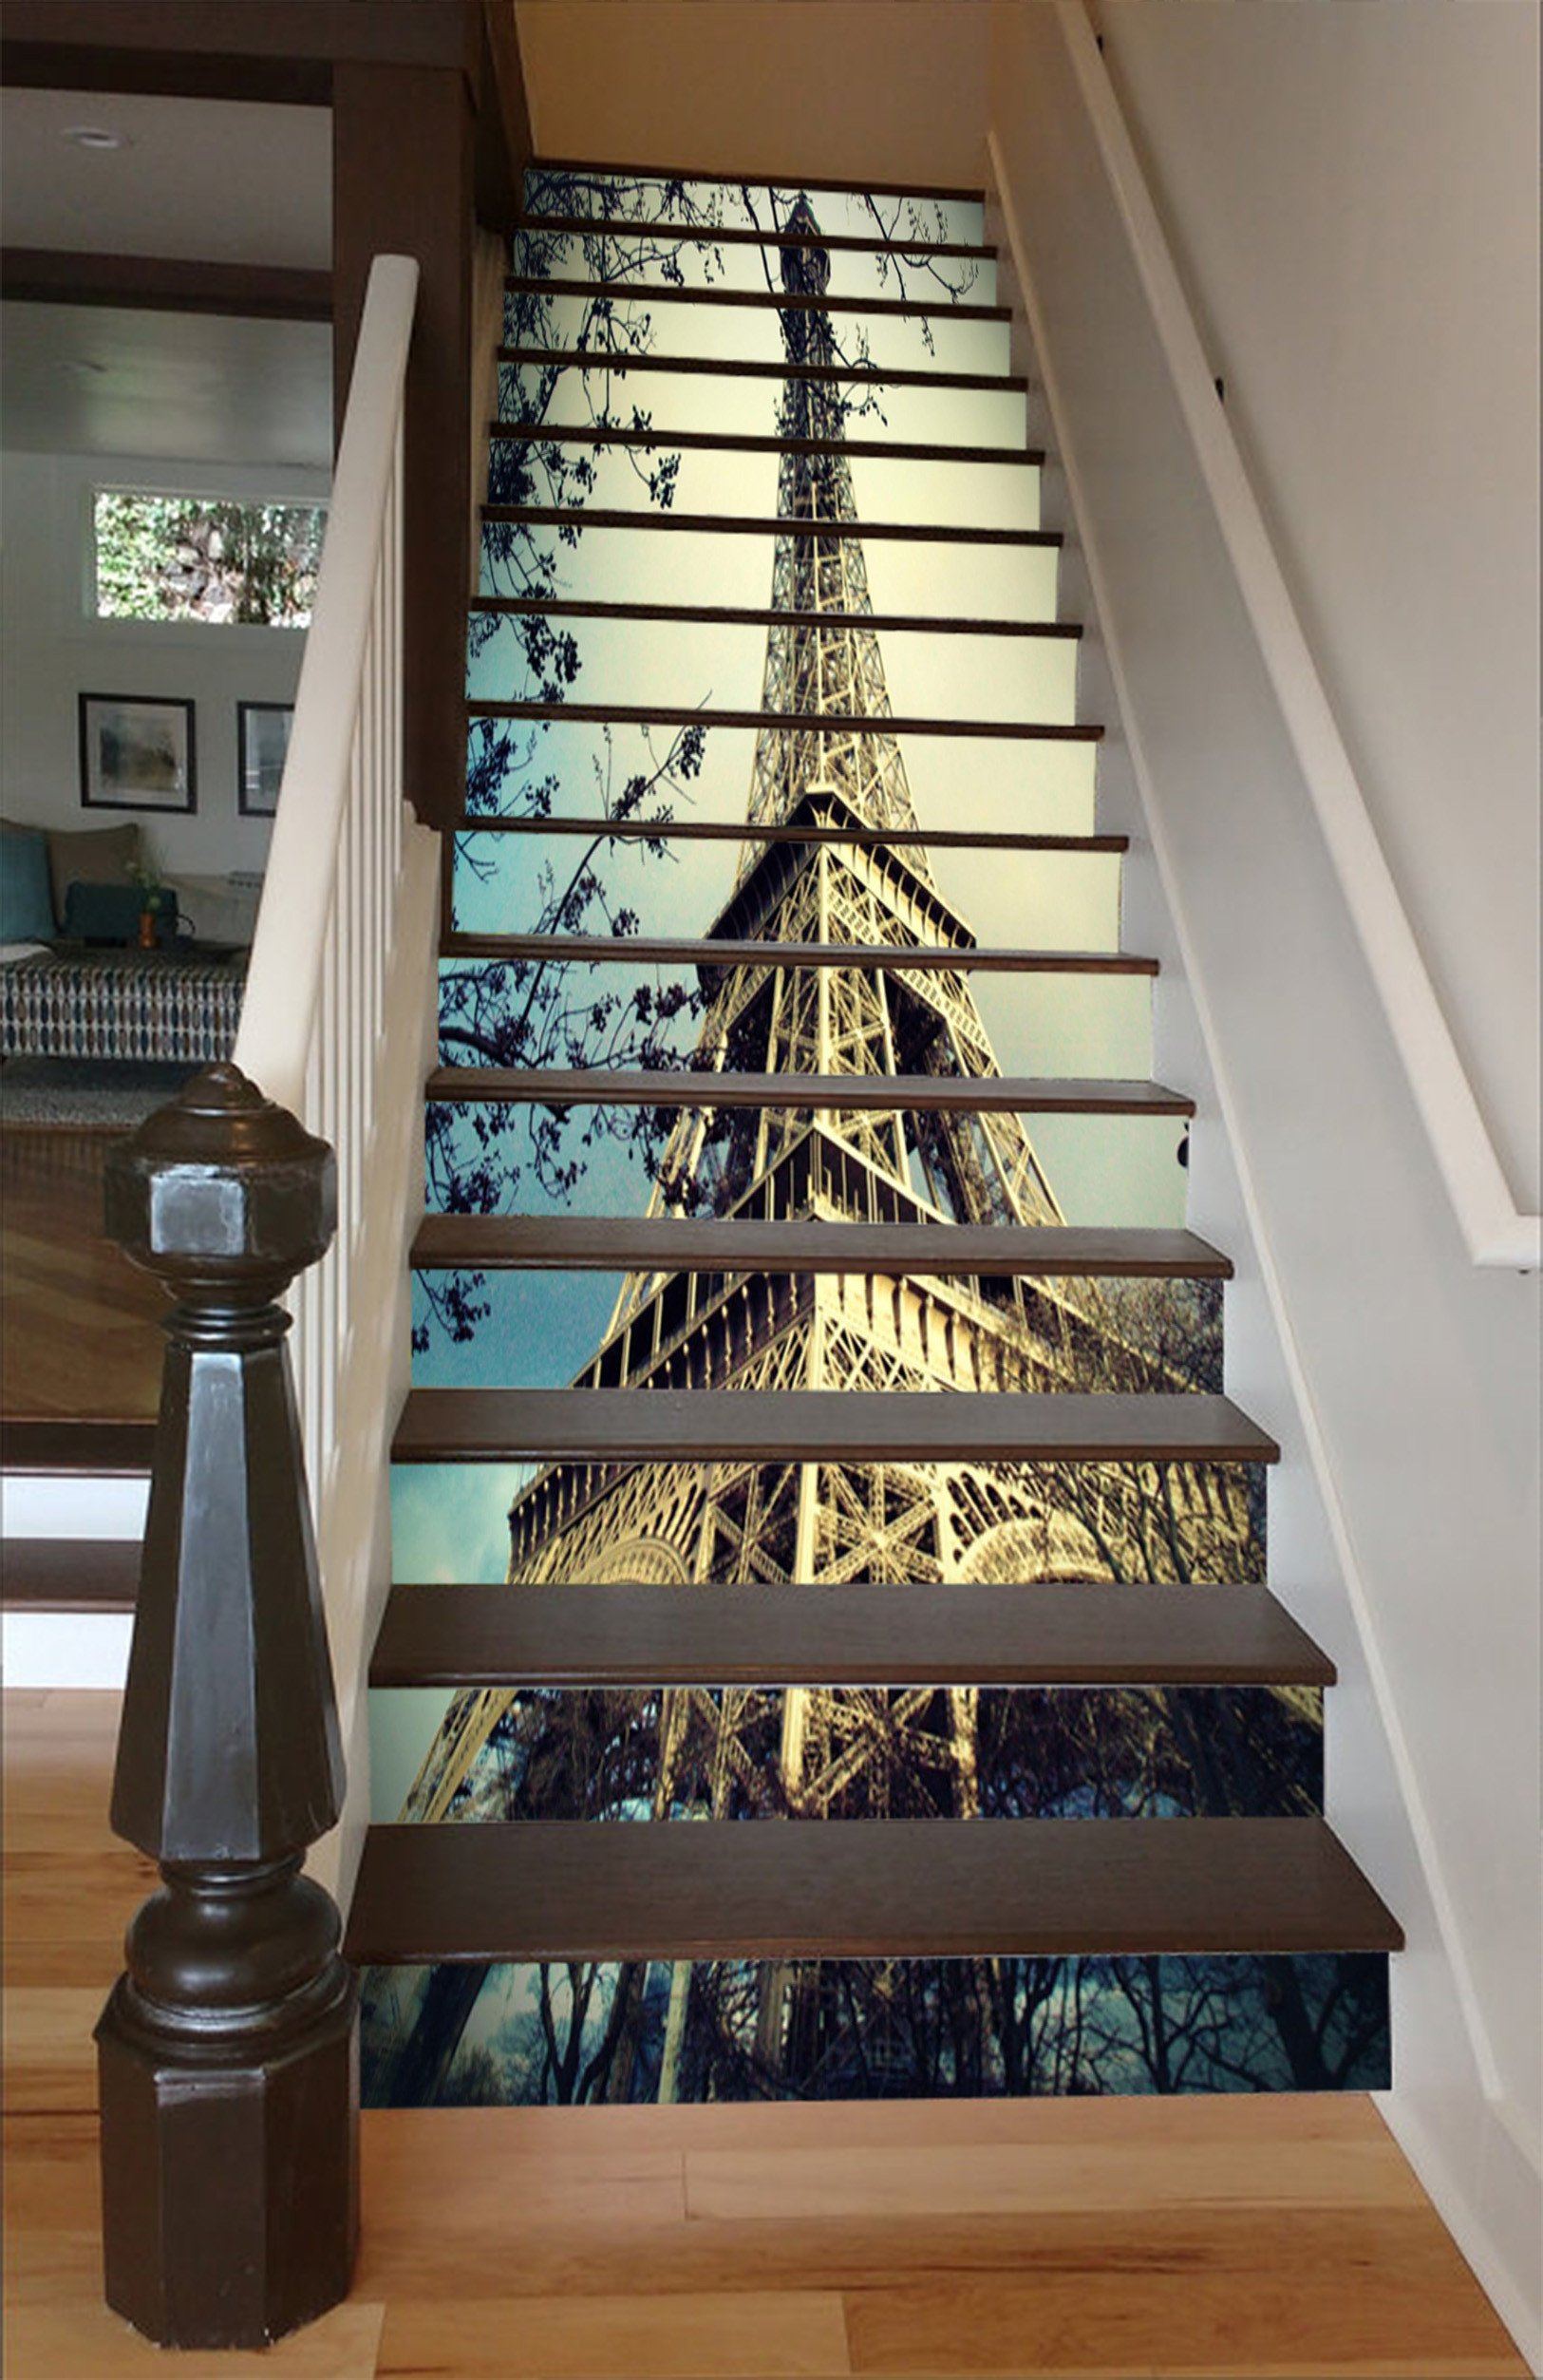 3D Eiffel Tower 1503 Stair Risers Wallpaper AJ Wallpaper 